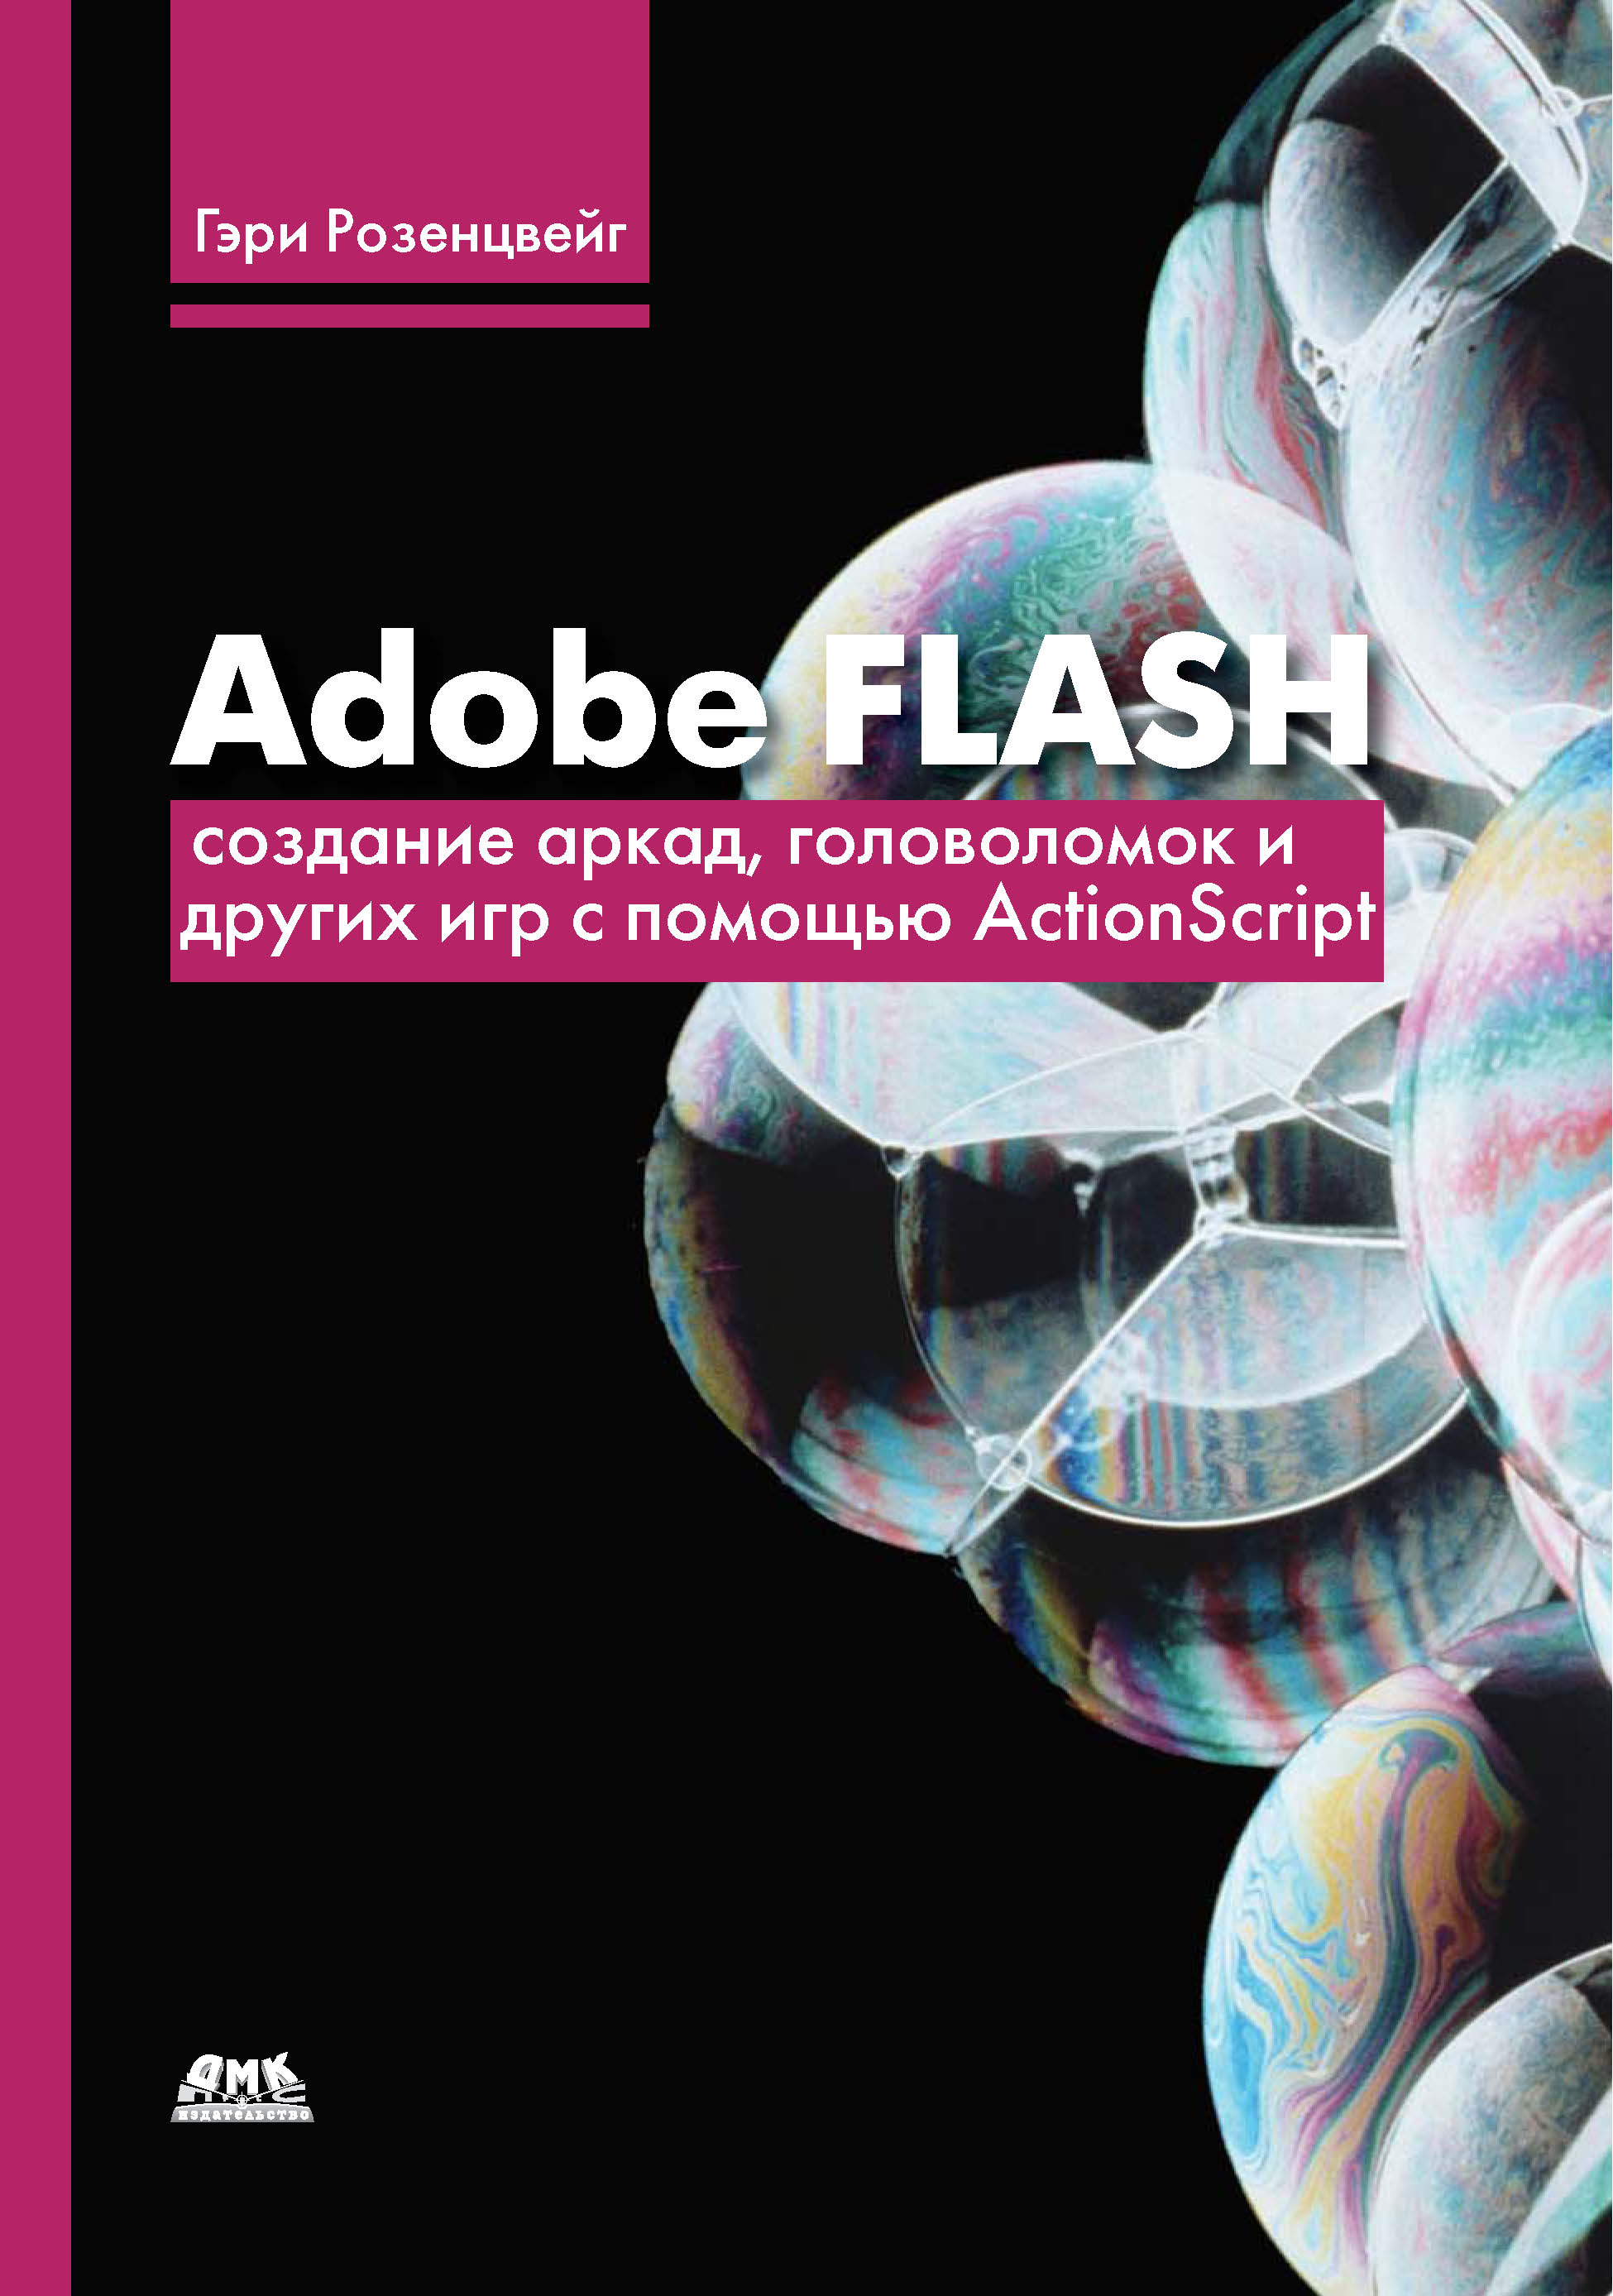 Adobe Flash.Создание аркад, головоломок и других игр с помощью ActionScript